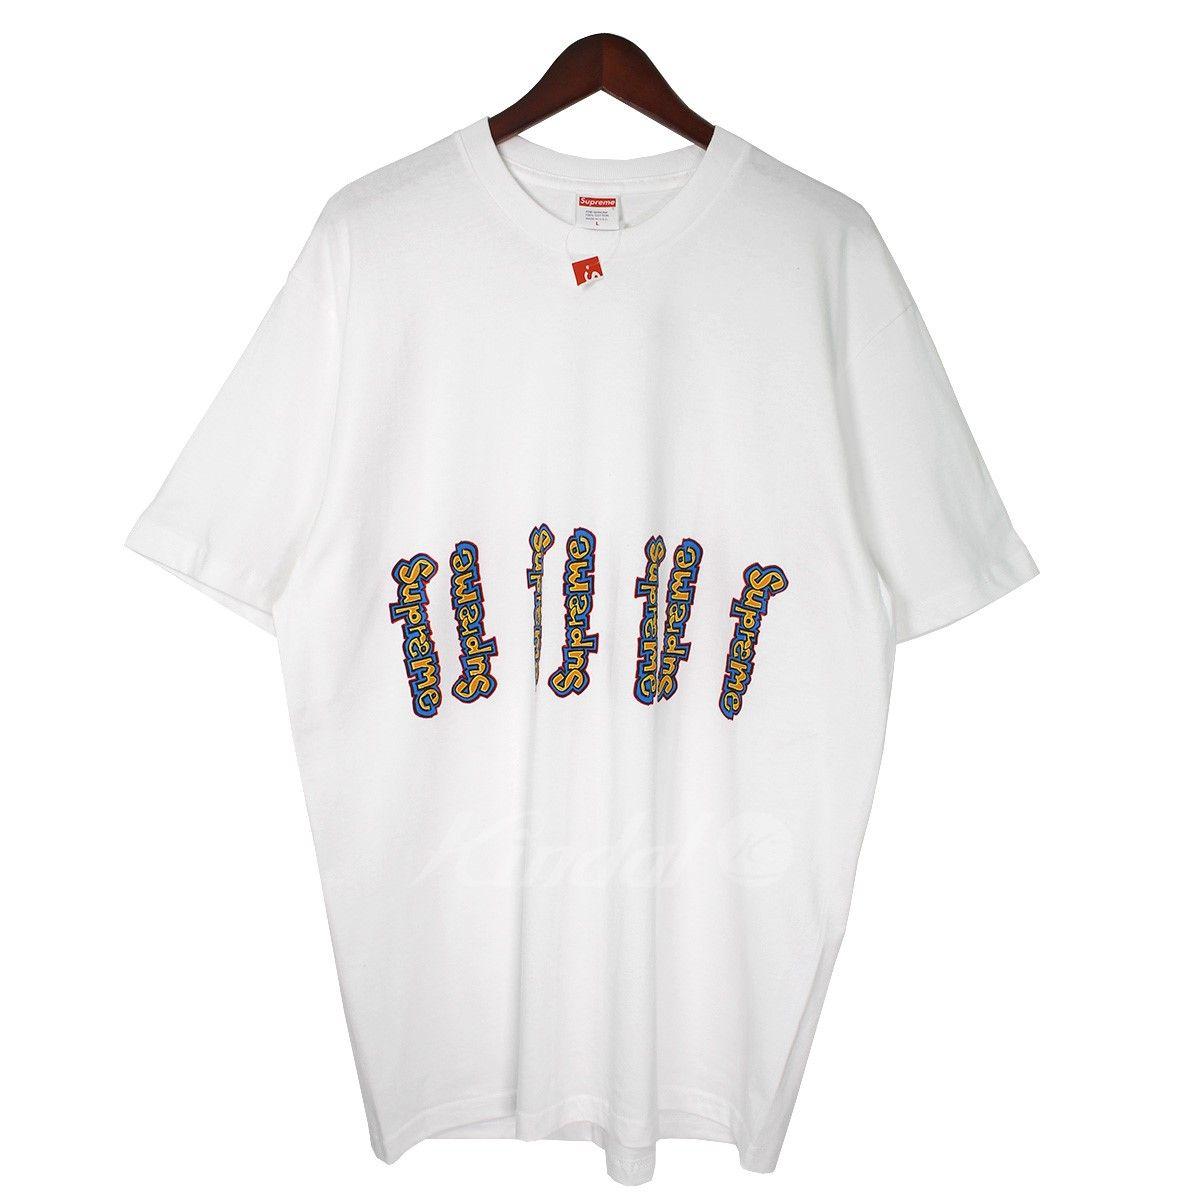 Multi Supreme Logo - kindal: SUPREME 18SS Gonz Logo Tee Gon's multi-logo T-shirt white ...